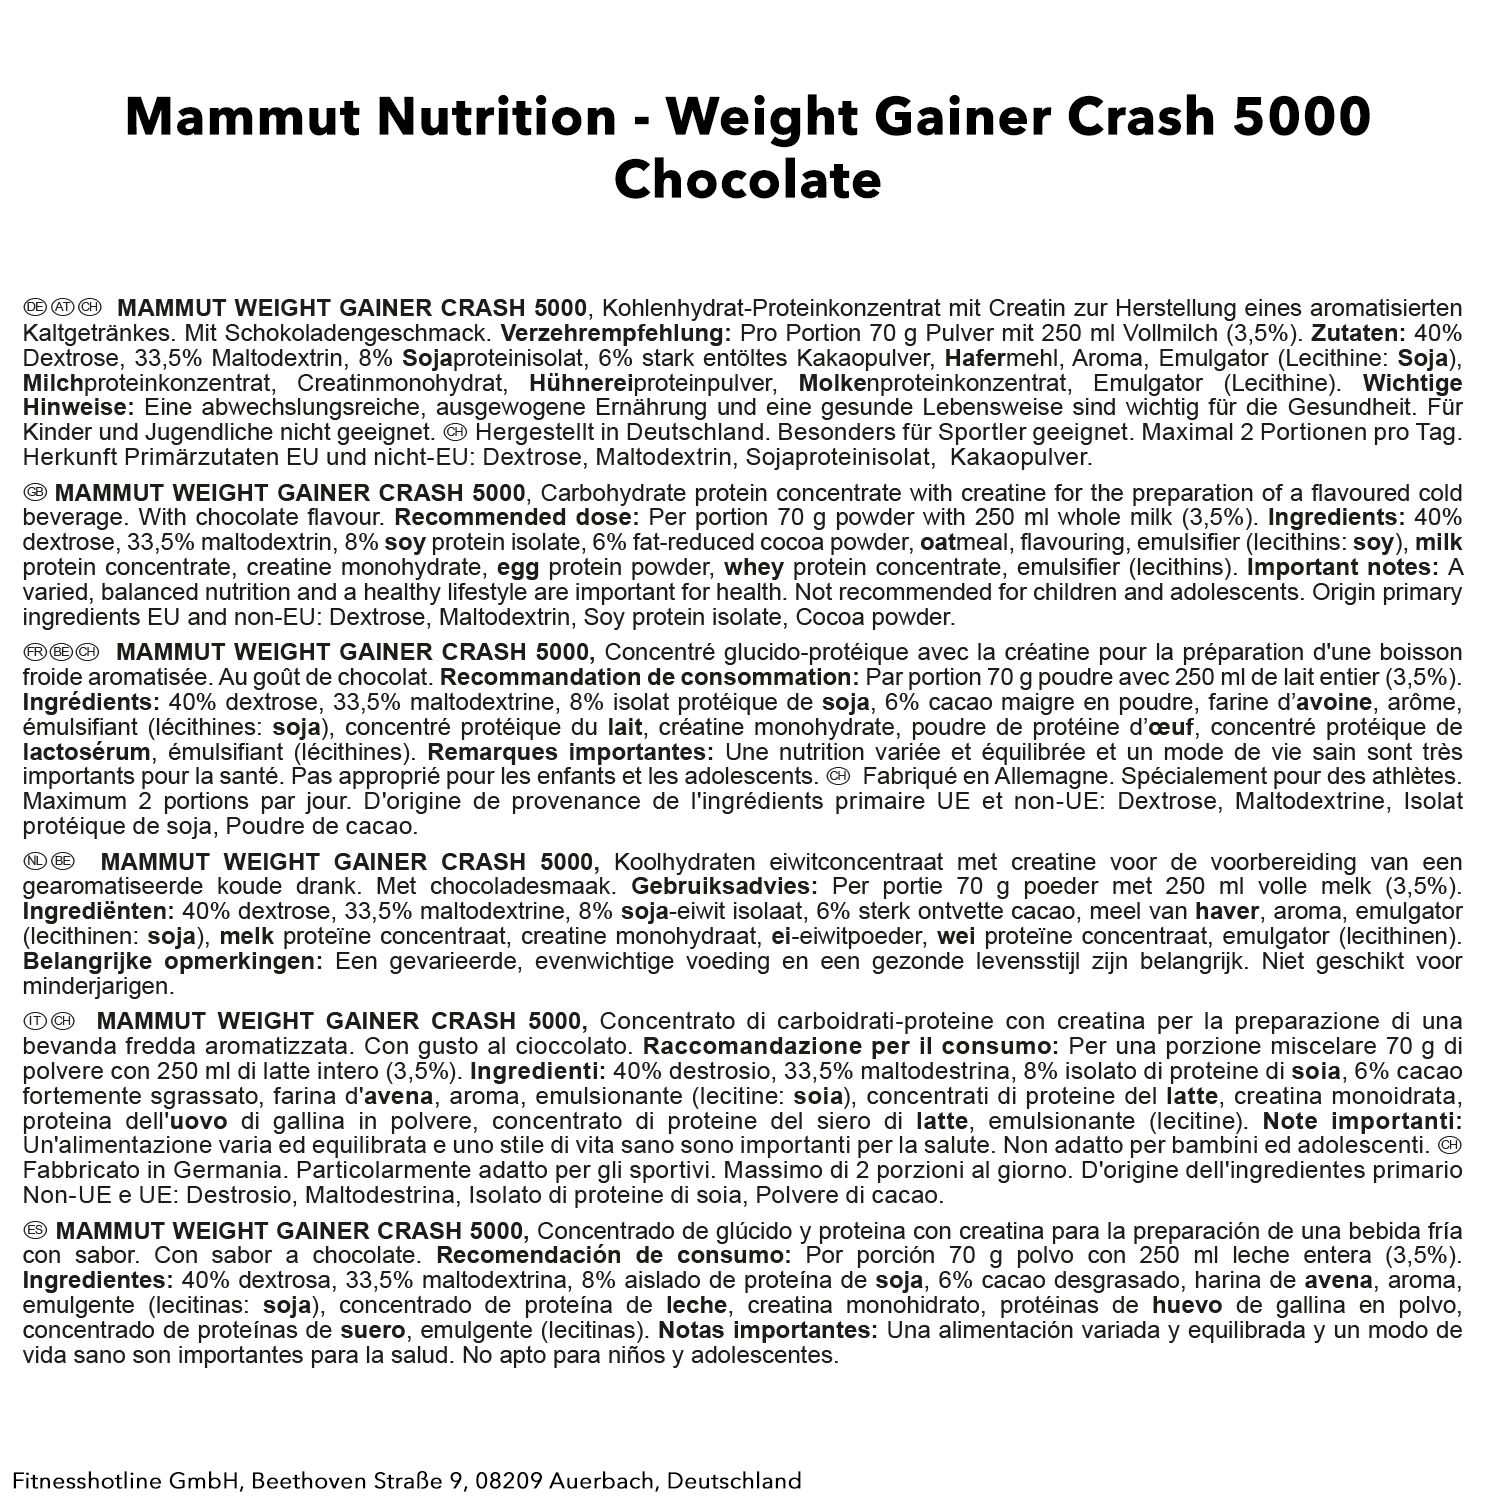 Mammut Weight Gainer Crash 5000, Schoko